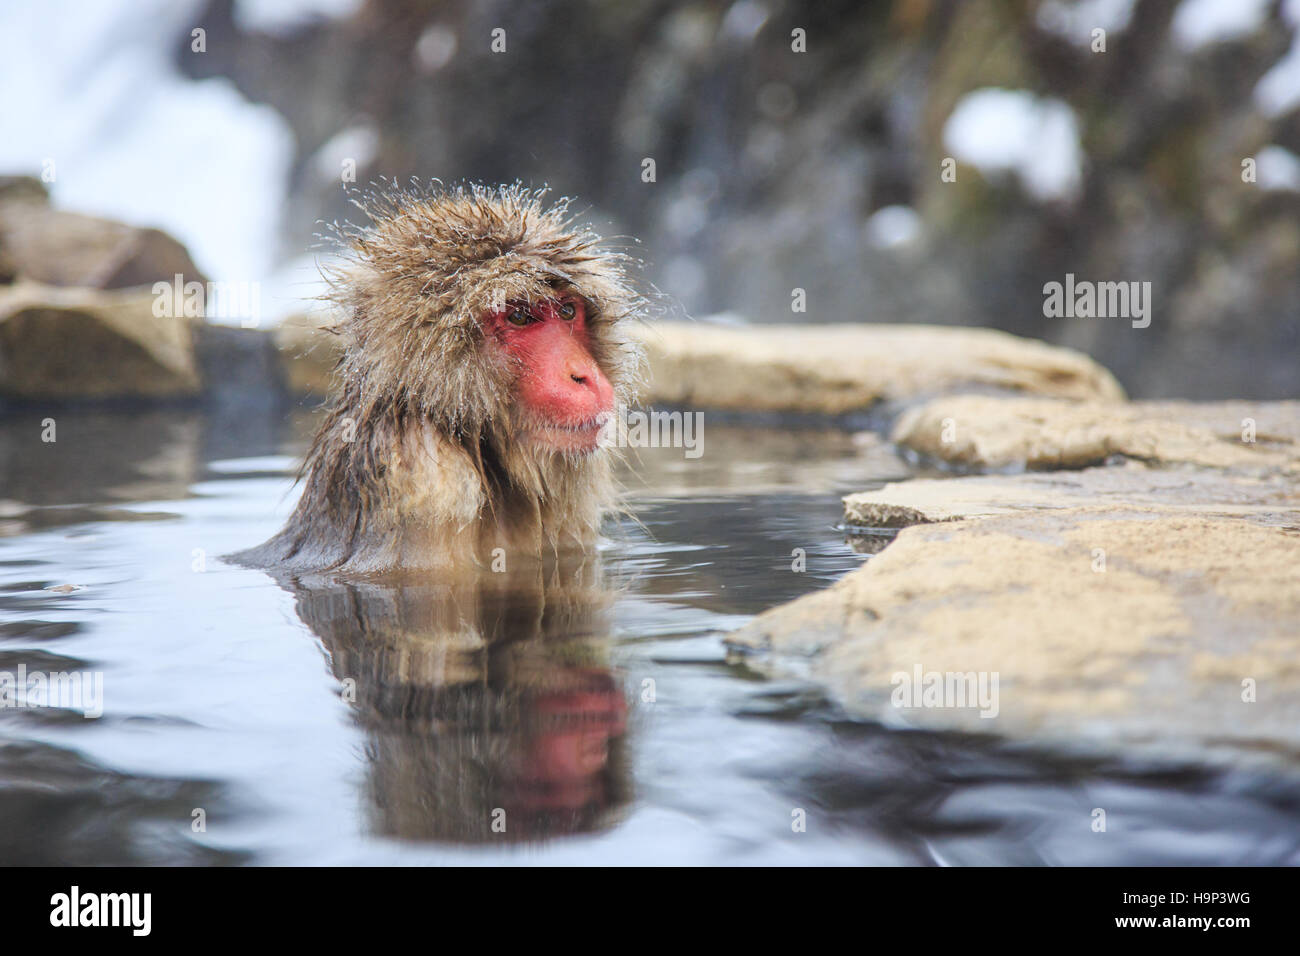 Schnee-Affen bei einem natürlichen Onsen (heiße Quelle), befindet sich in Jigokudani Park, Yudanaka. Nagano, Japan. Stockfoto